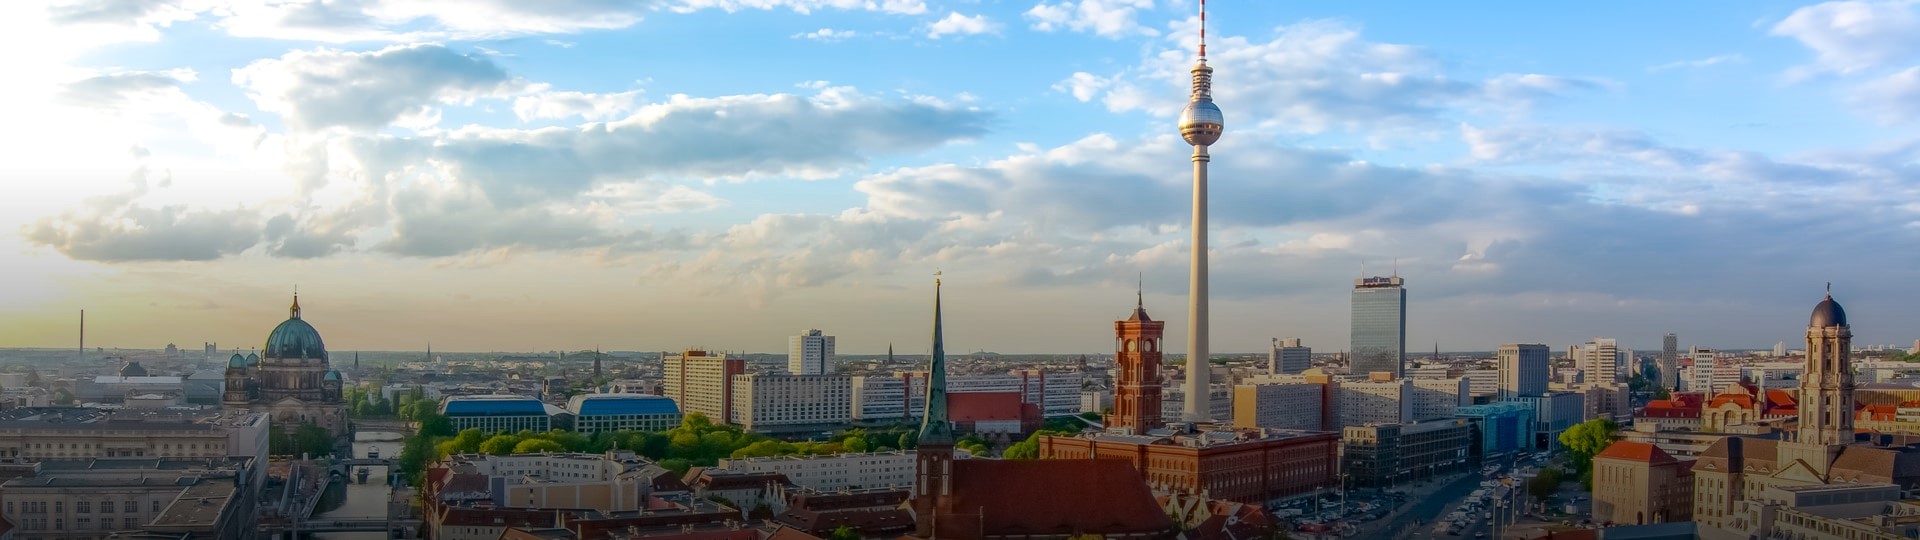 Zastropování výše nájemného v Berlíně je protiústavní